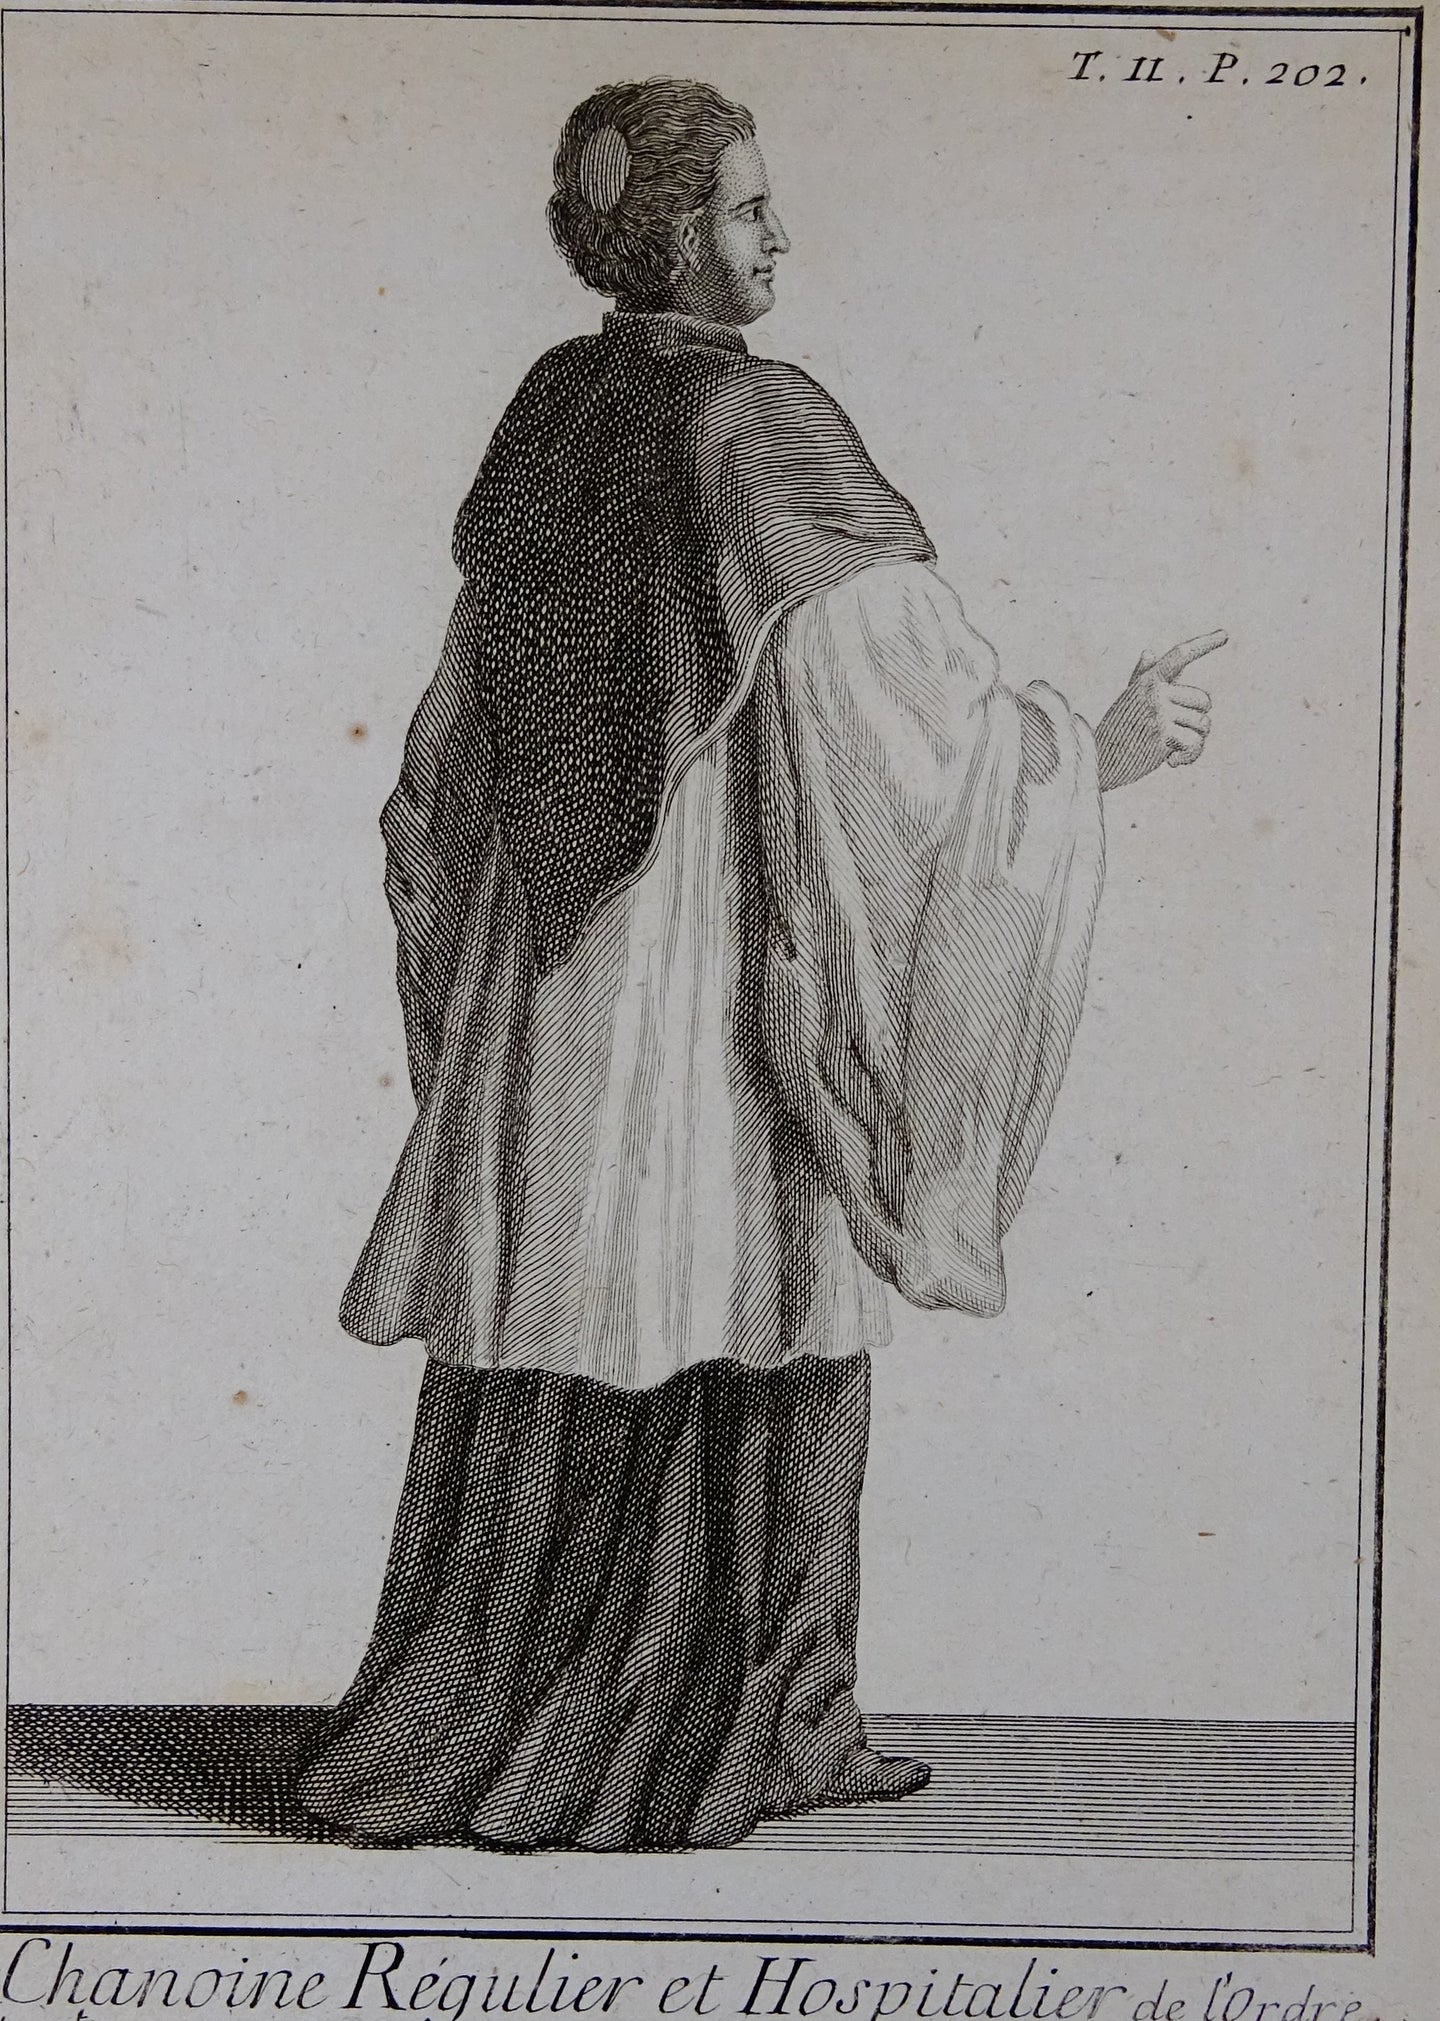 Chanoine Régulier et Hospitalier - Histoire des ordres monastiques, religieux et militaires et des congrégations séculières  - 1714